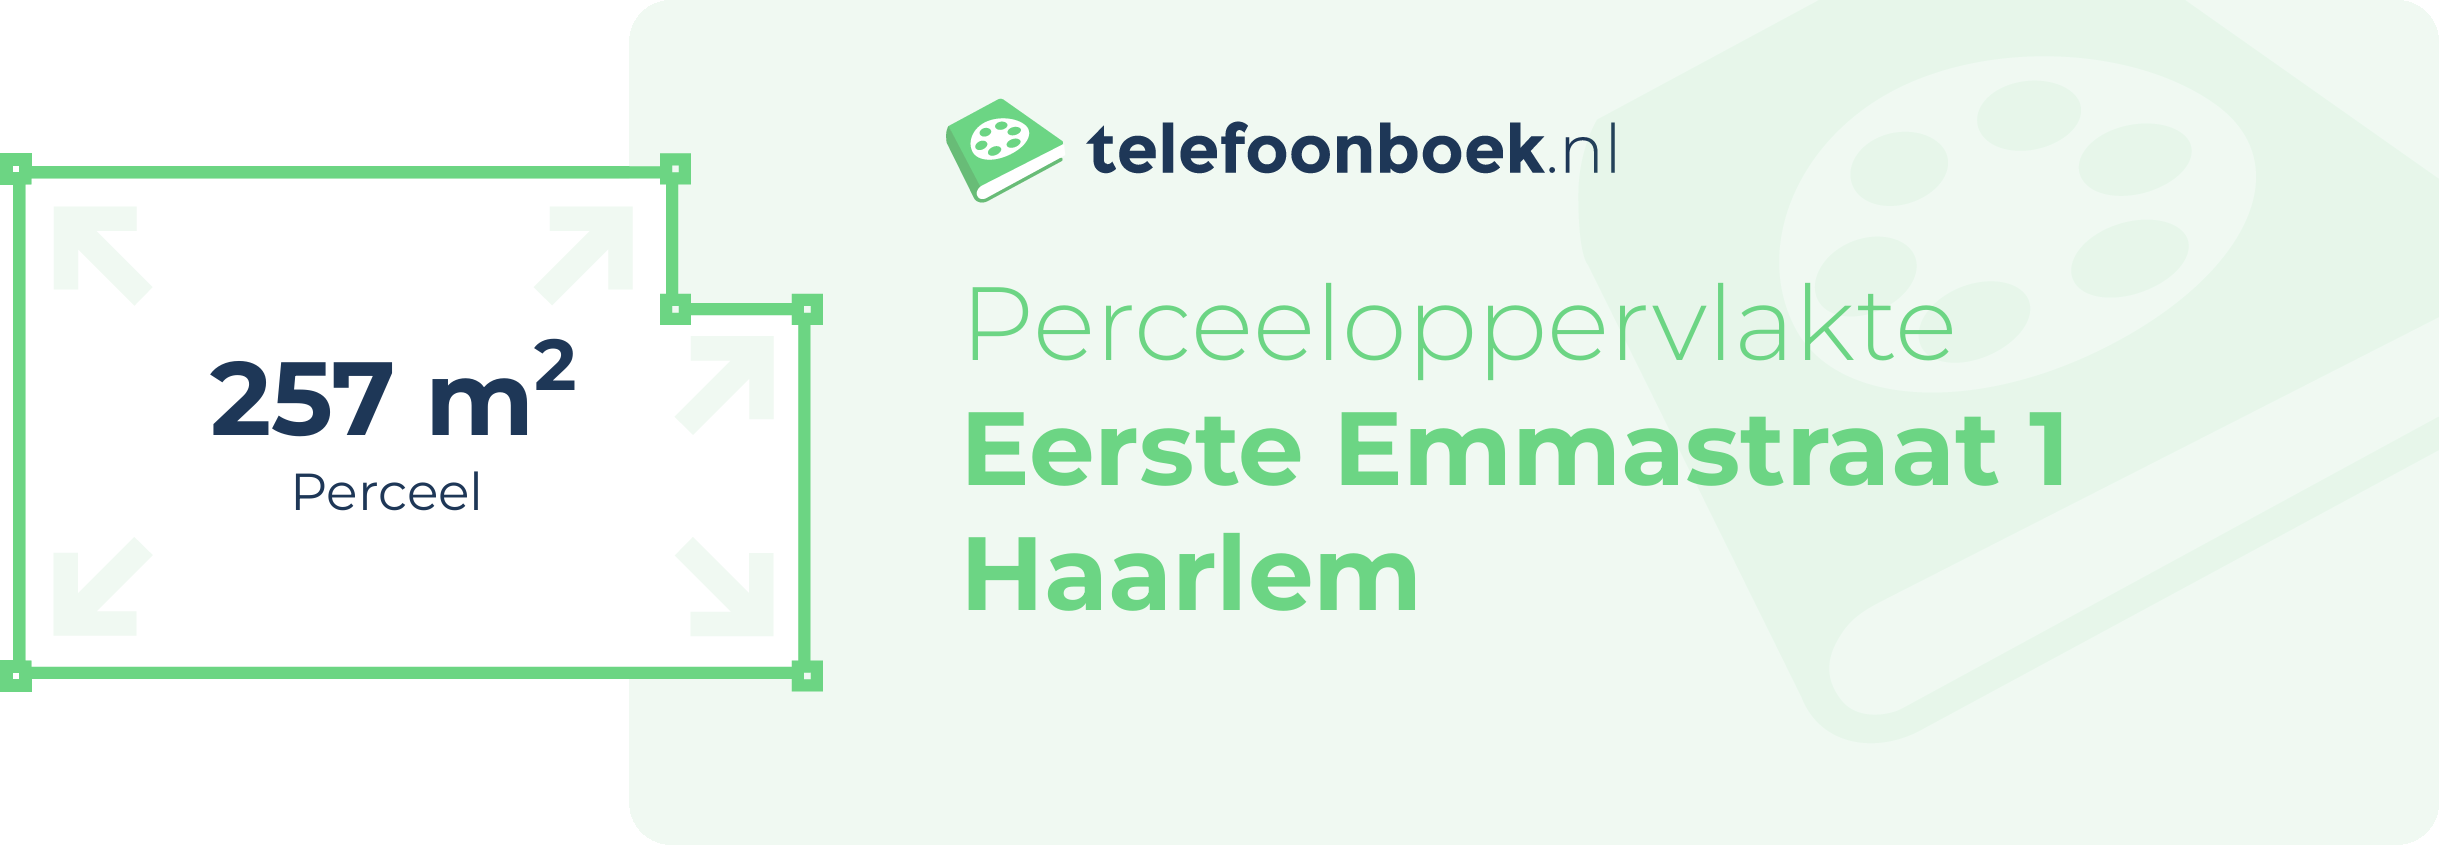 Perceeloppervlakte Eerste Emmastraat 1 Haarlem